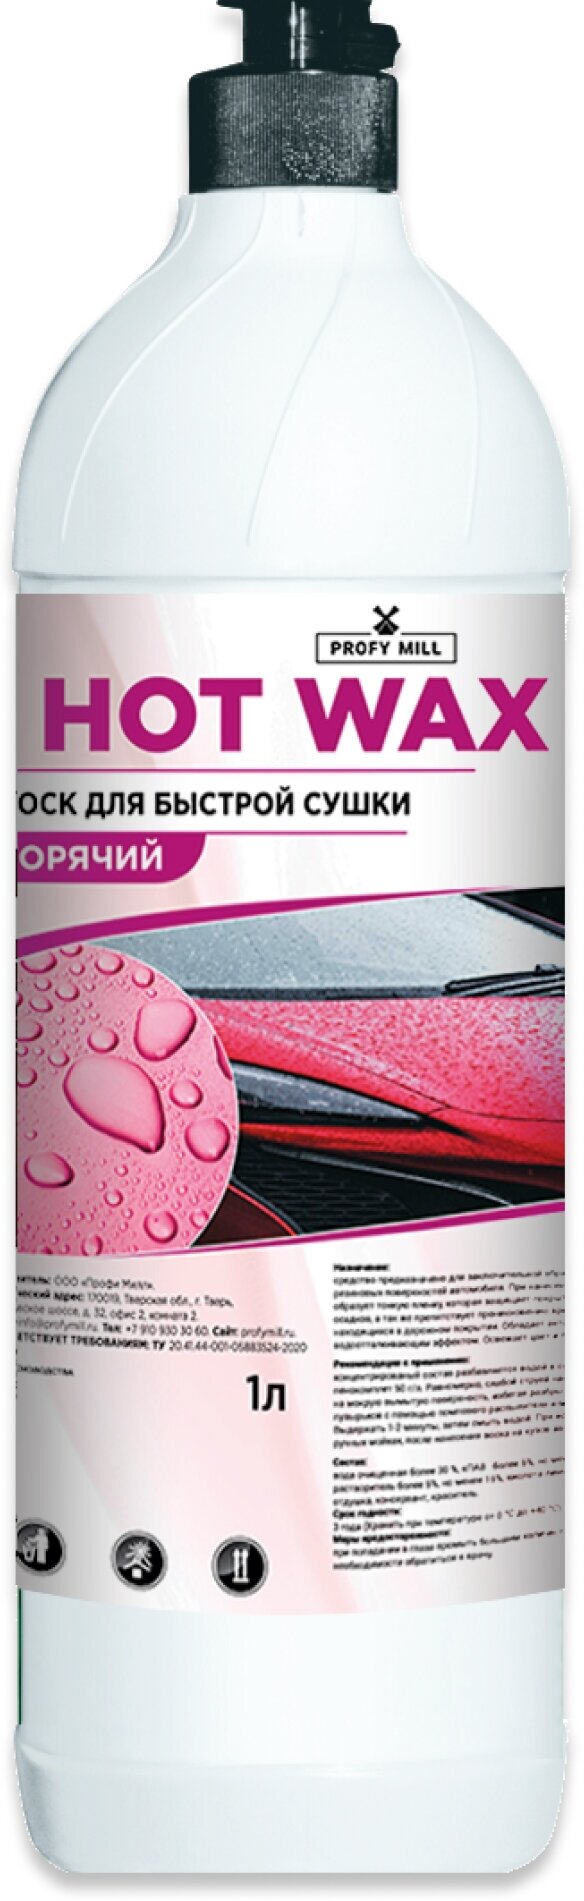 Воск для быстрой сушки автомобиля "HOT WAX" 1л (1/19)